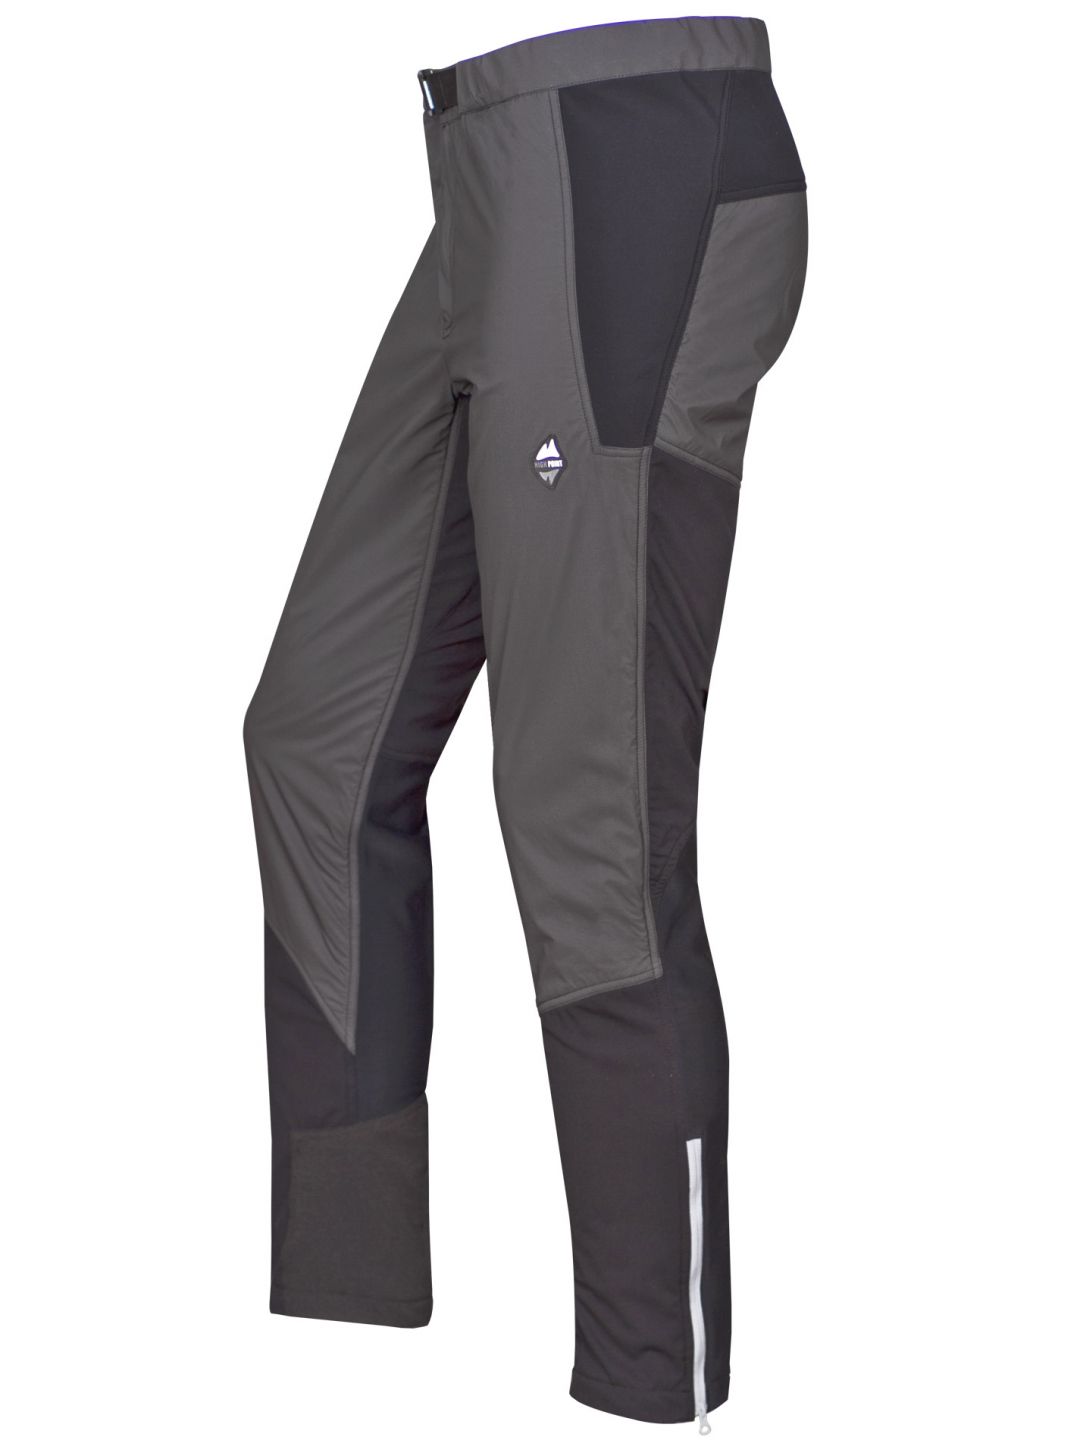 HIGH POINT ALPHA pants Black varianta: XL